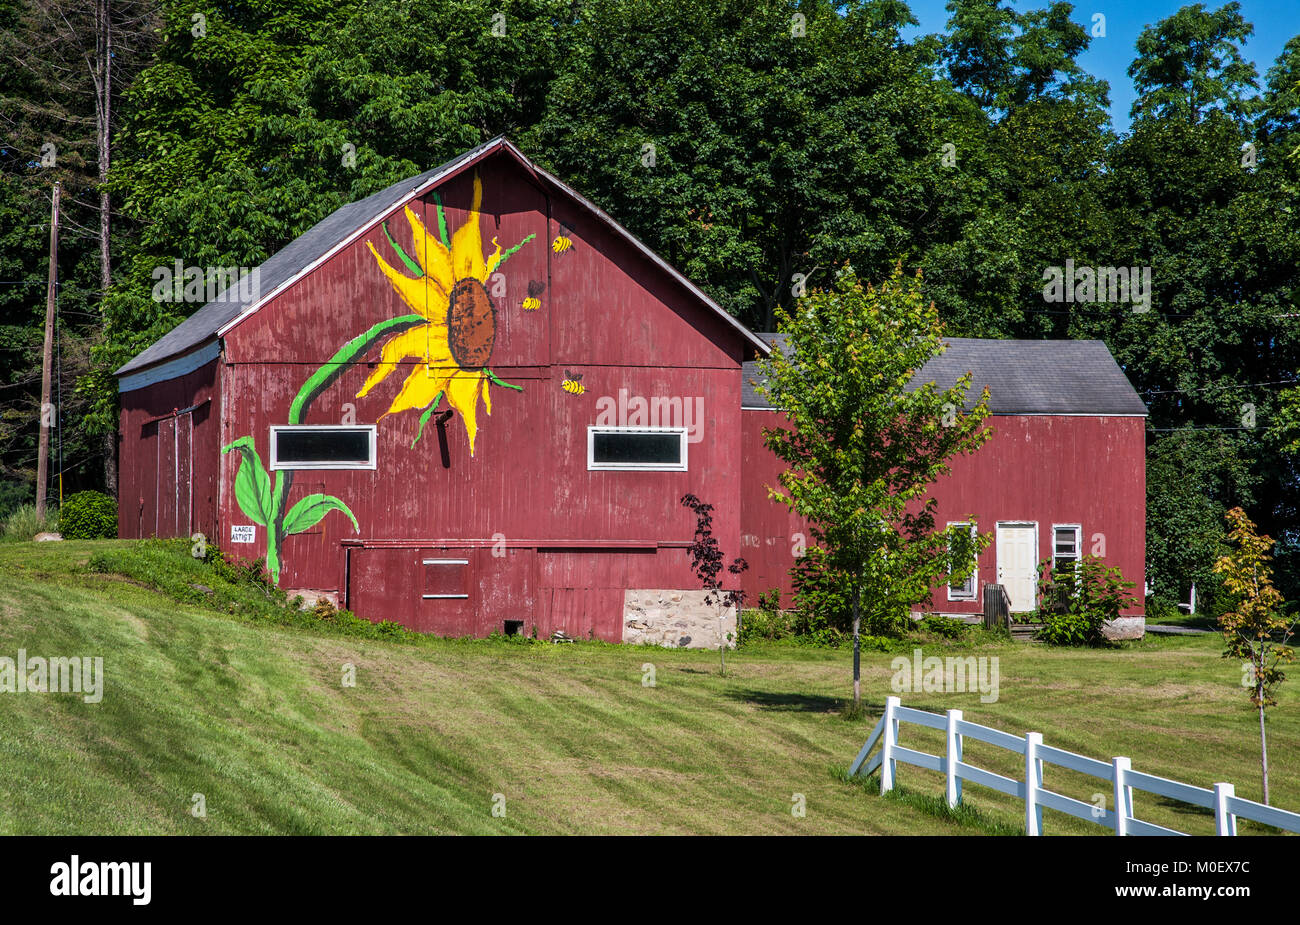 Große fröhliche Sonnenblume, handbemalt auf einer roten Scheune, Rochester, New York, USA Farmland Sonnenblumen abstrakt, amerikanischer Scheune Sommer Stockfoto